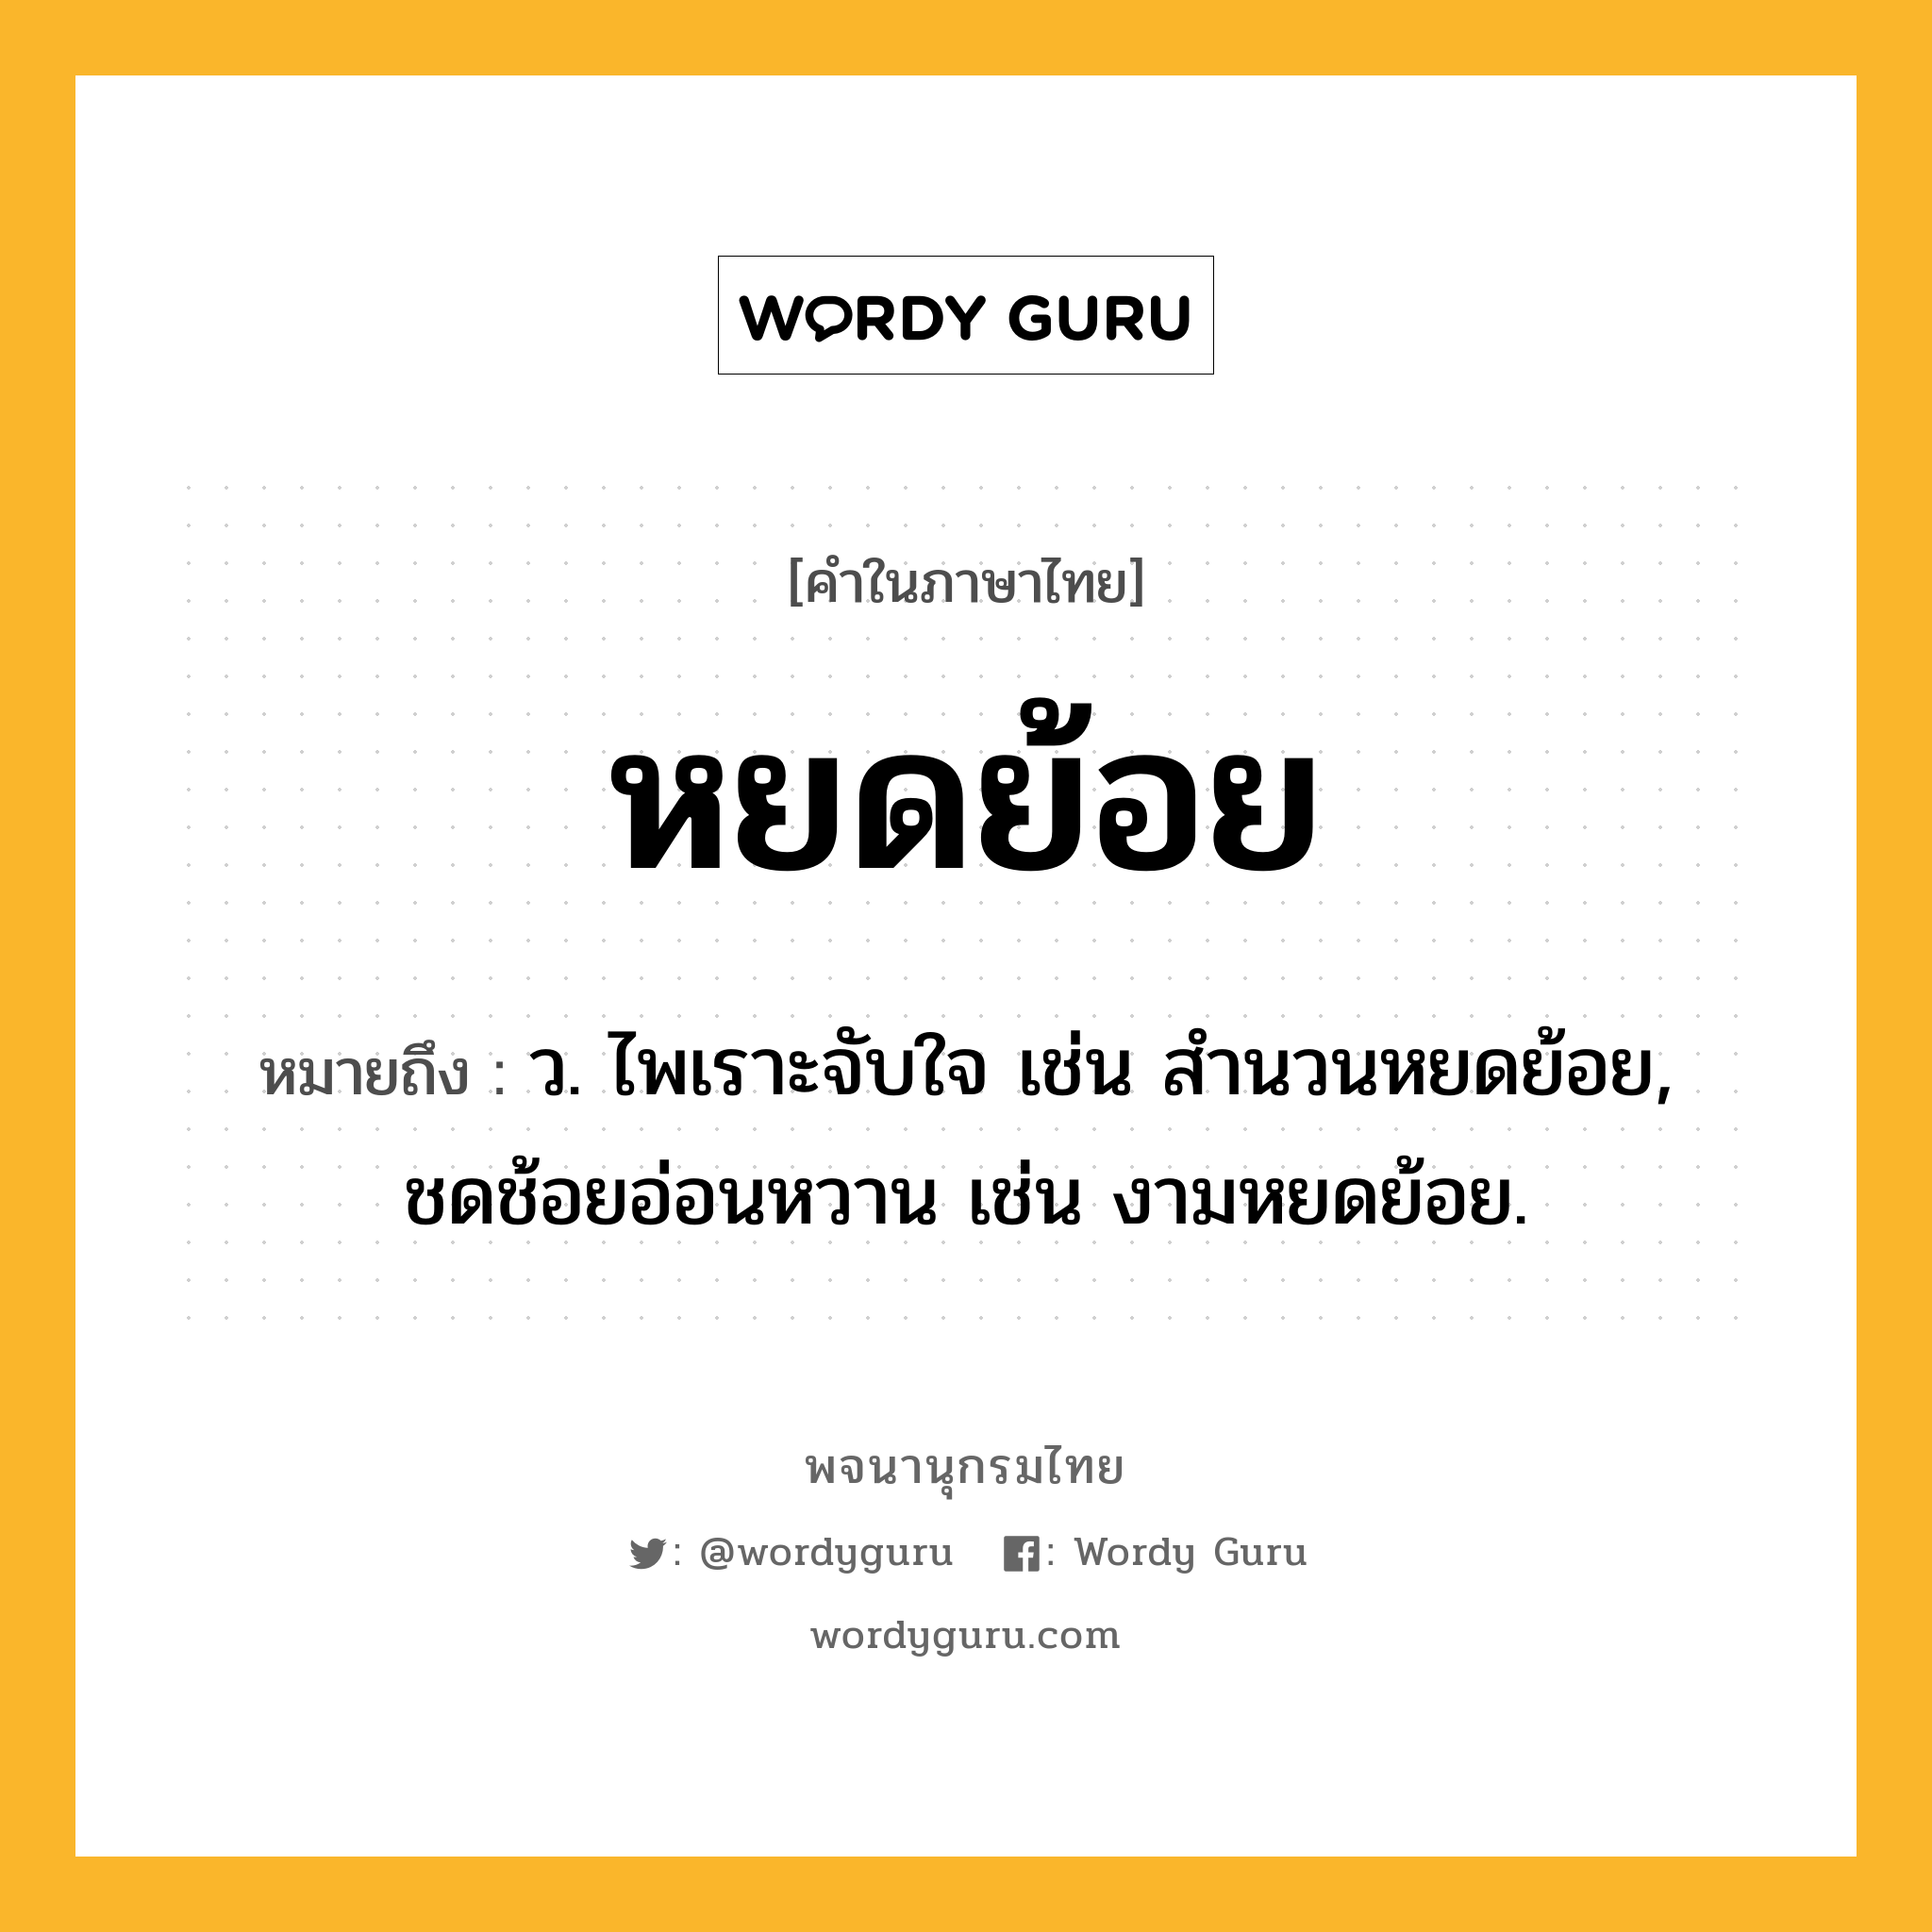 หยดย้อย หมายถึงอะไร?, คำในภาษาไทย หยดย้อย หมายถึง ว. ไพเราะจับใจ เช่น สำนวนหยดย้อย, ชดช้อยอ่อนหวาน เช่น งามหยดย้อย.